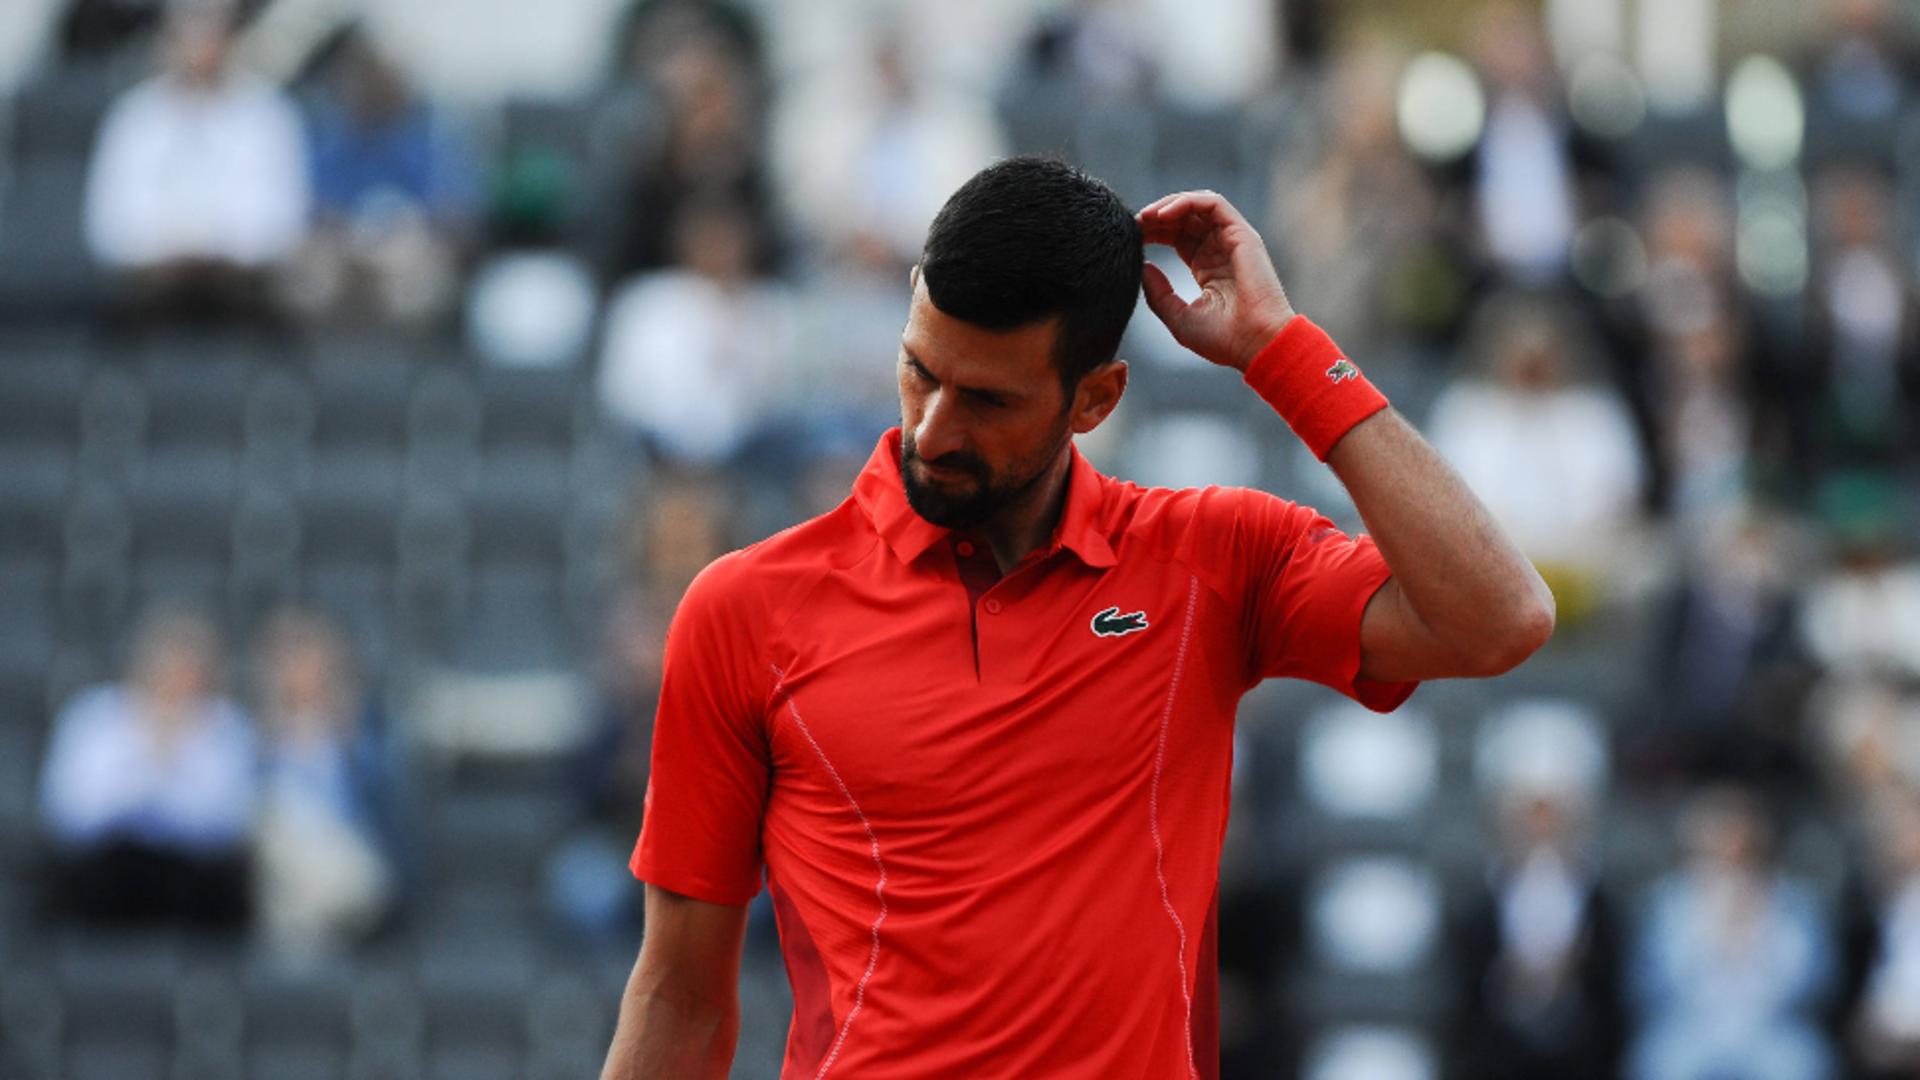 Novak Djokovici s-a prăbușit, lovit în cap cu o sticlă. Scena șocanță la turneul de la Roma – VIDEO